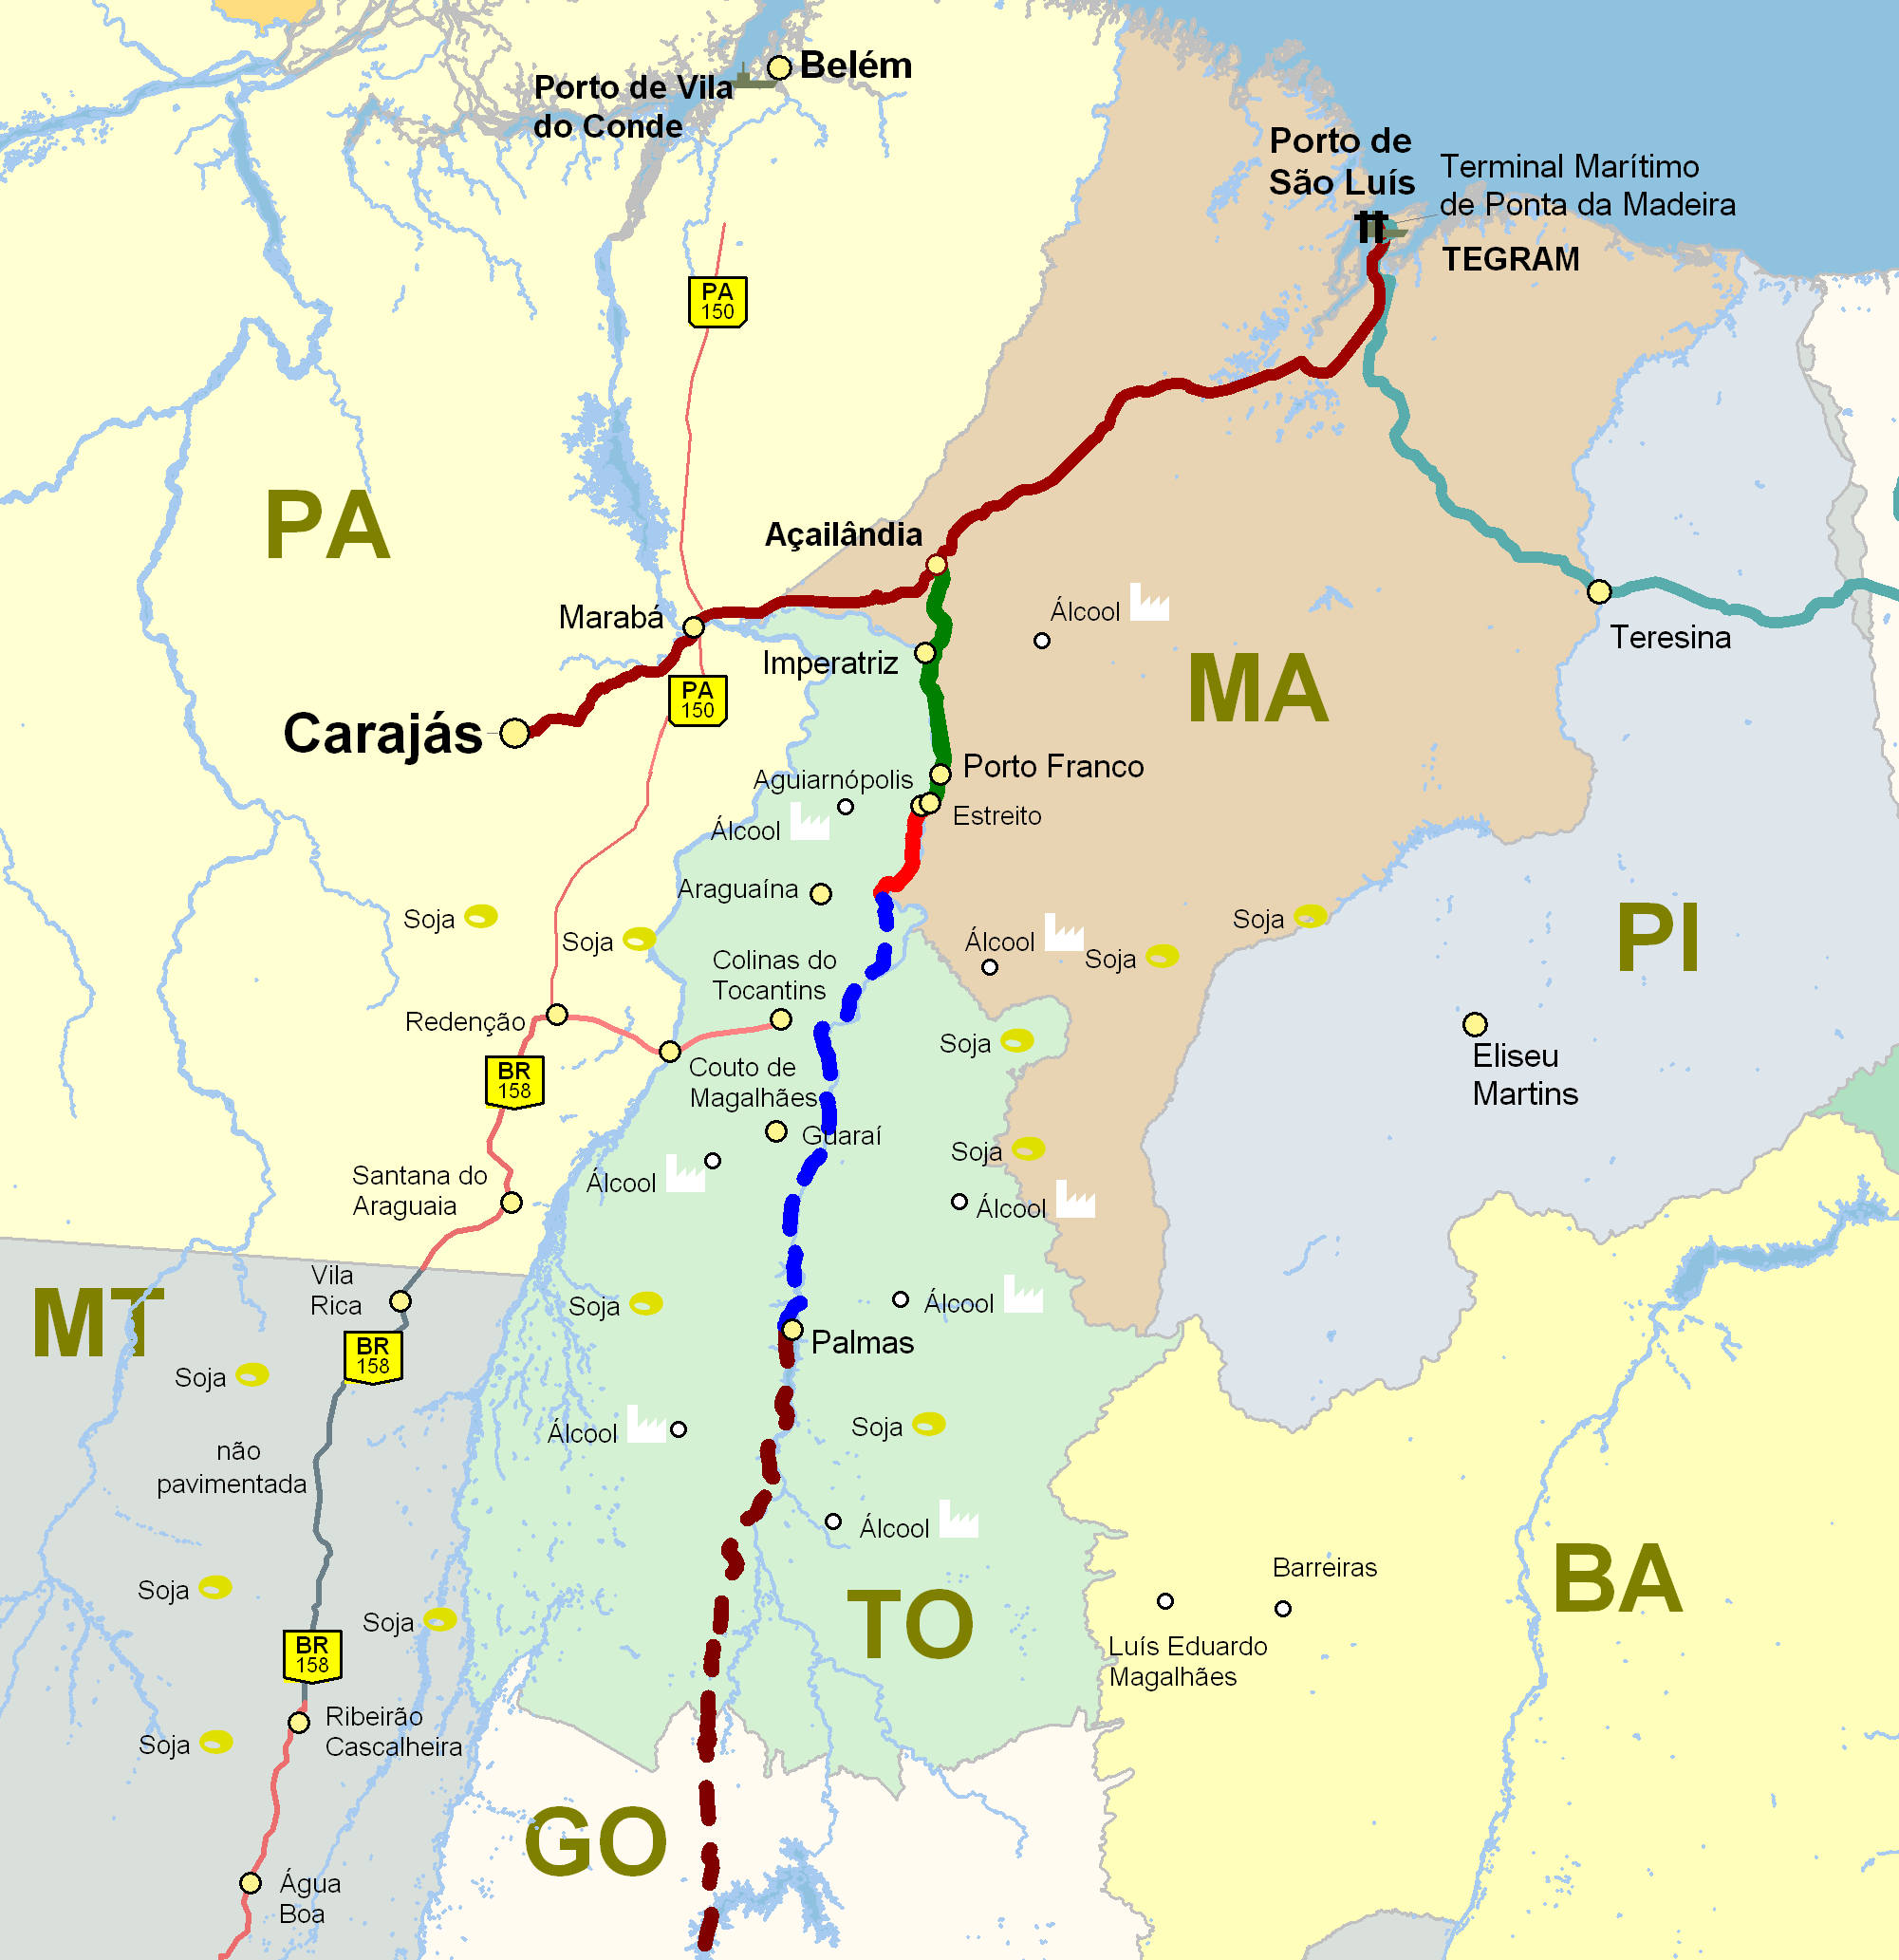 Ferrovia Norte Sul O Projeto Ampliação do Corredor Logístico da Região Centro-Norte Terminais de Carregamento Porto Franco/MA km 200 (713km até São Luís/MA)